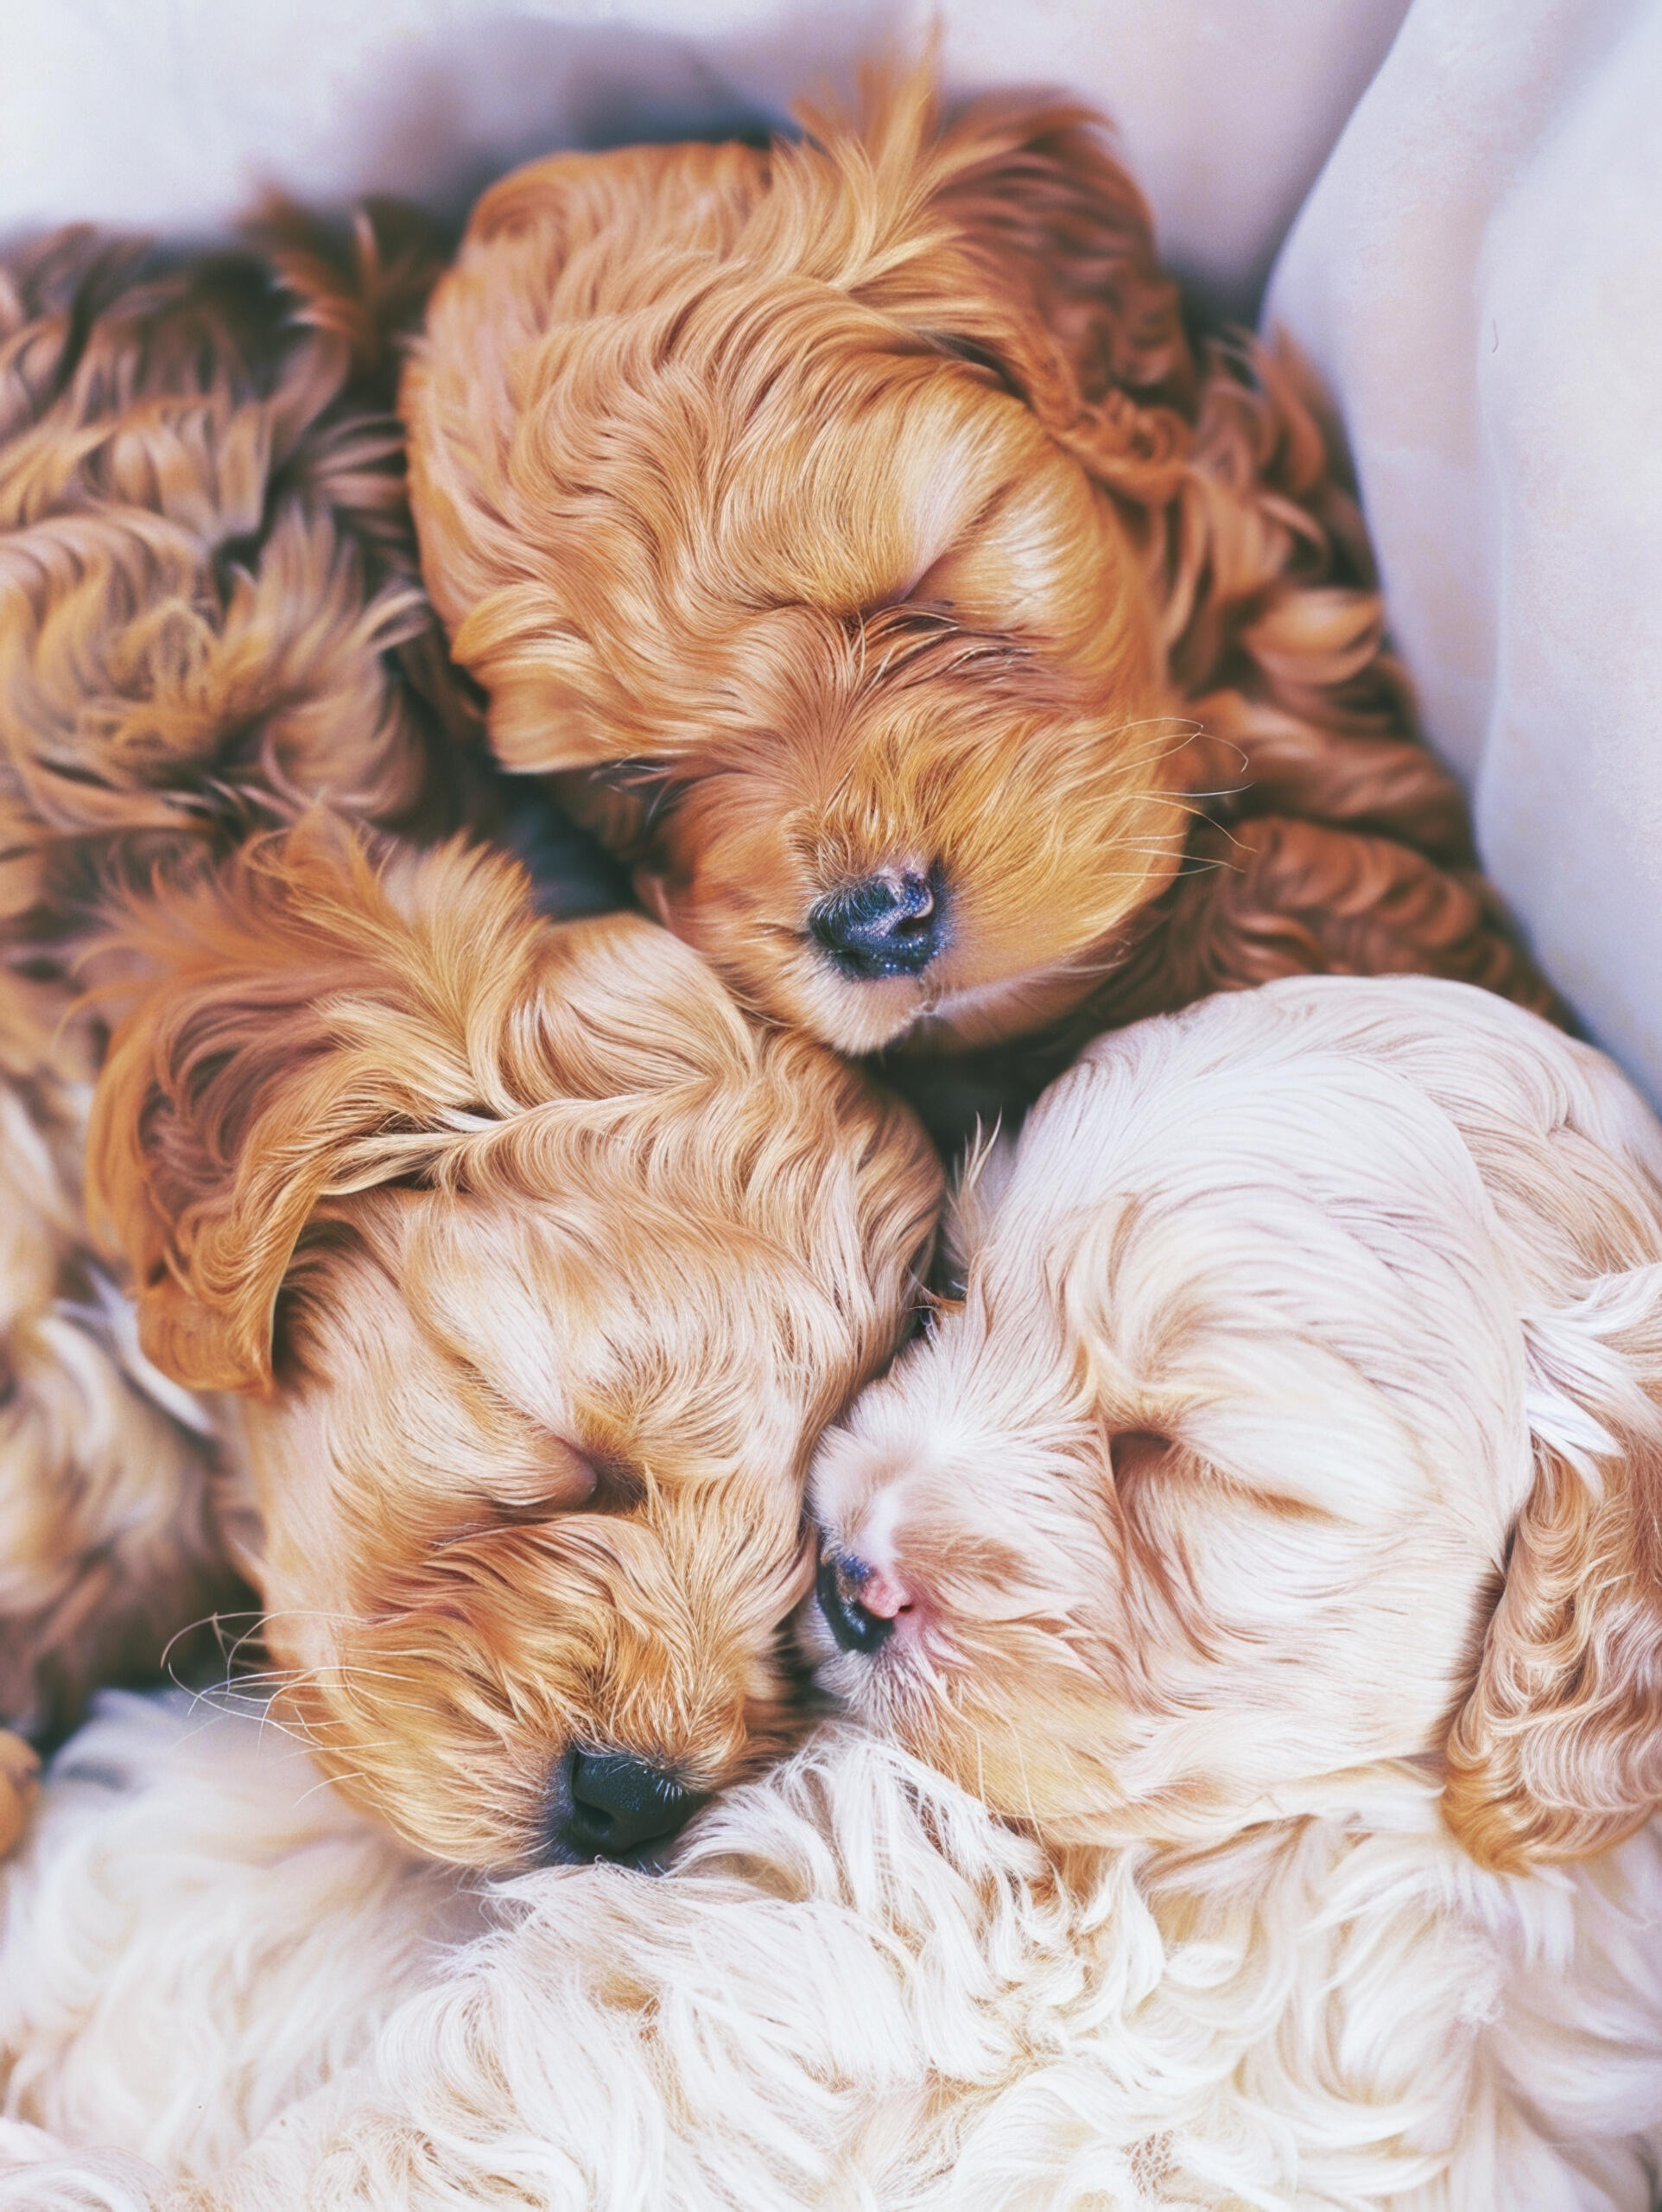 doodle dog breed puppies sleeping